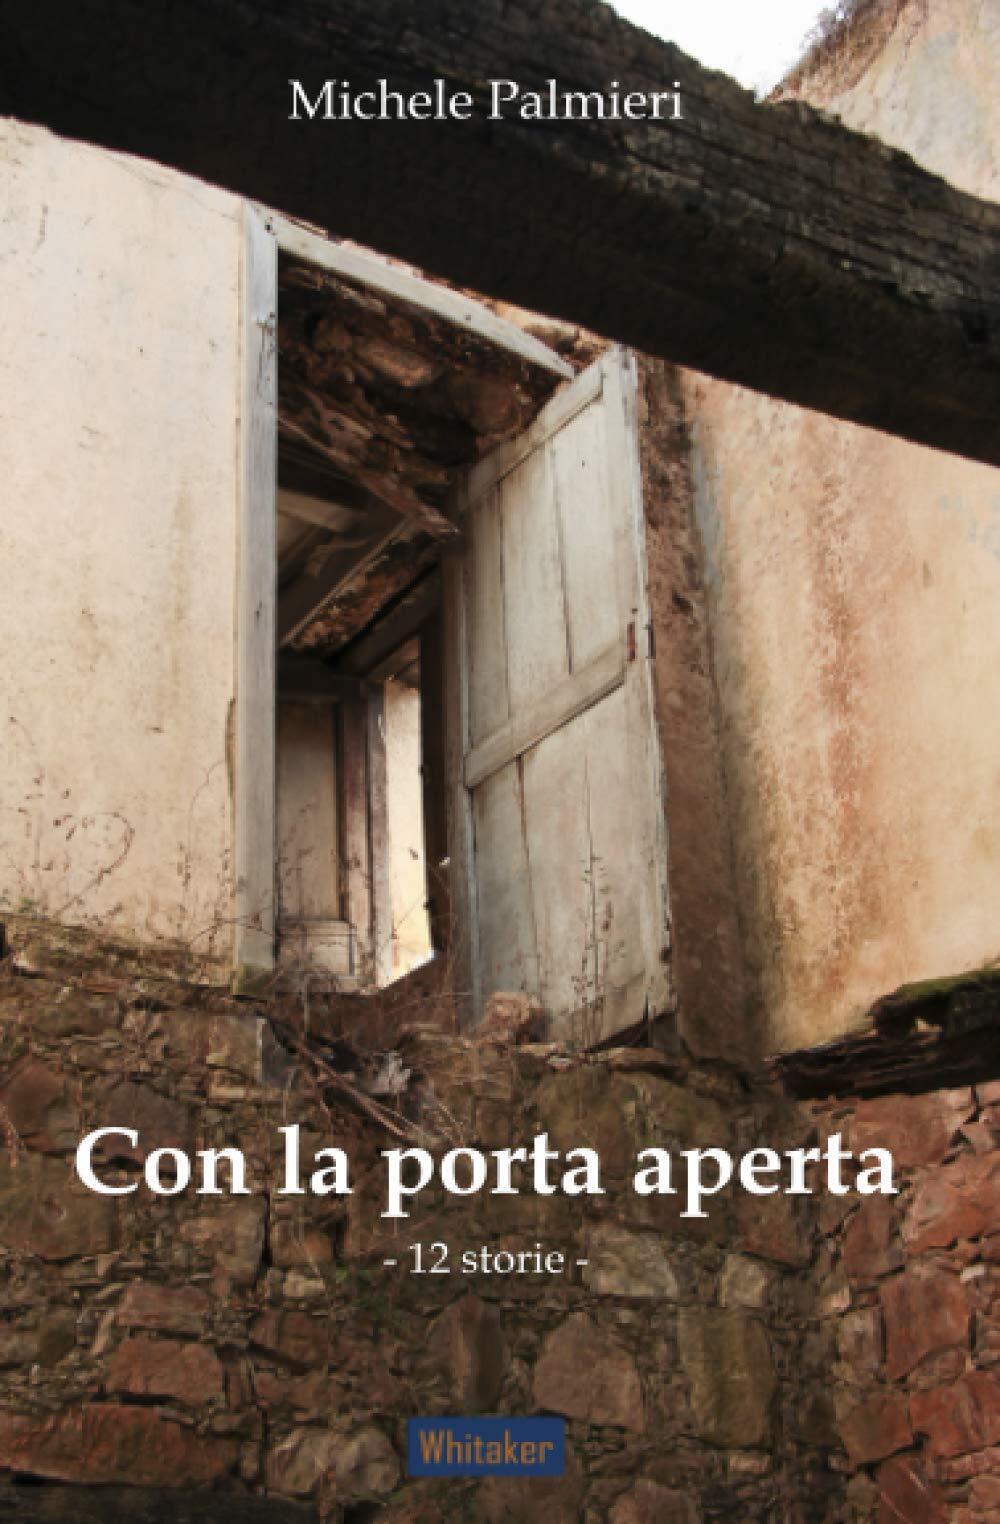 Con la porta aperta. 12 storie - Michele Palmieri - Autopubblicato, 2020